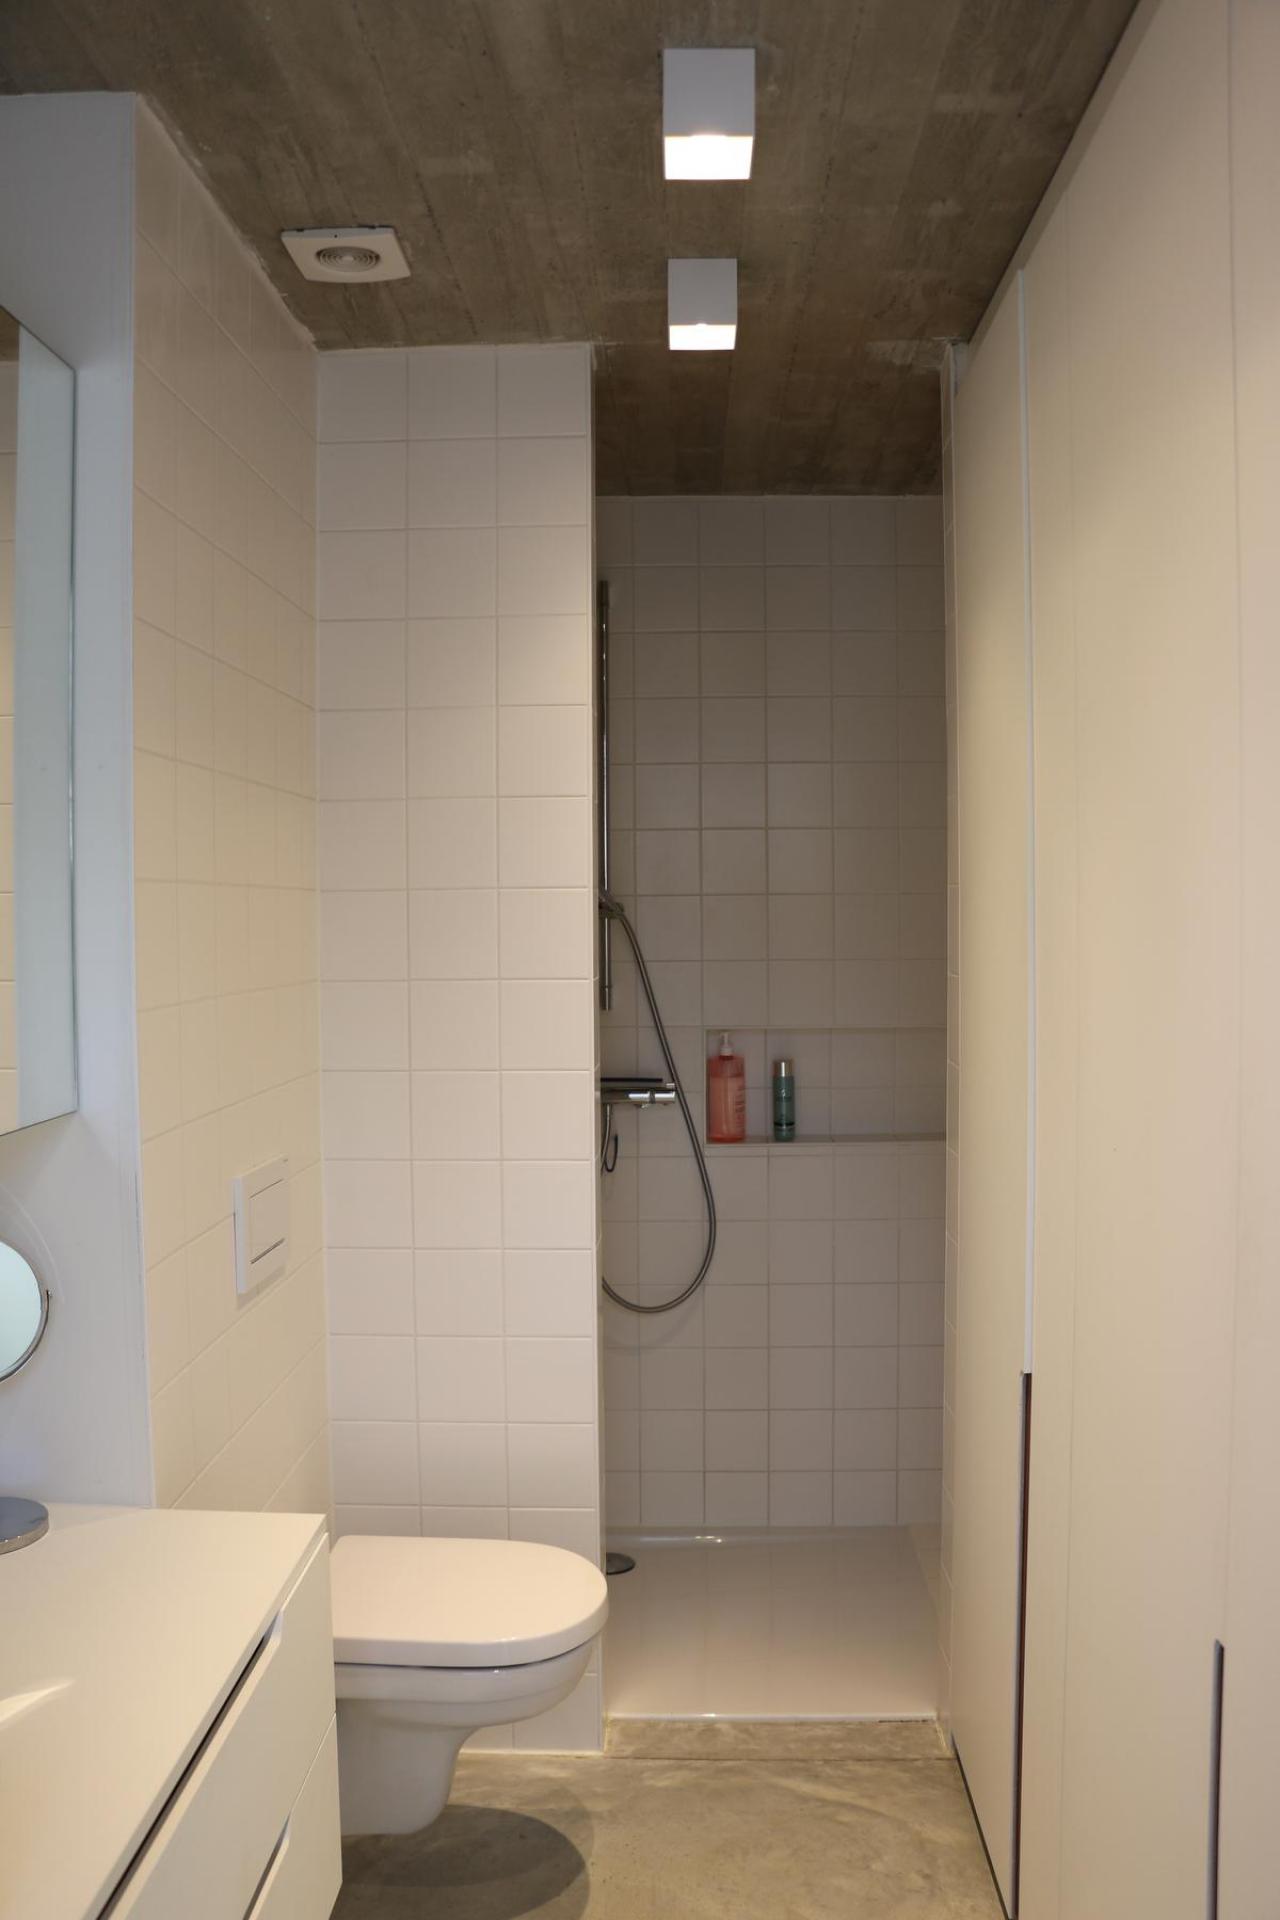 Het betonnen plafond is overal zichtbaar, ook in de doucheruimte.